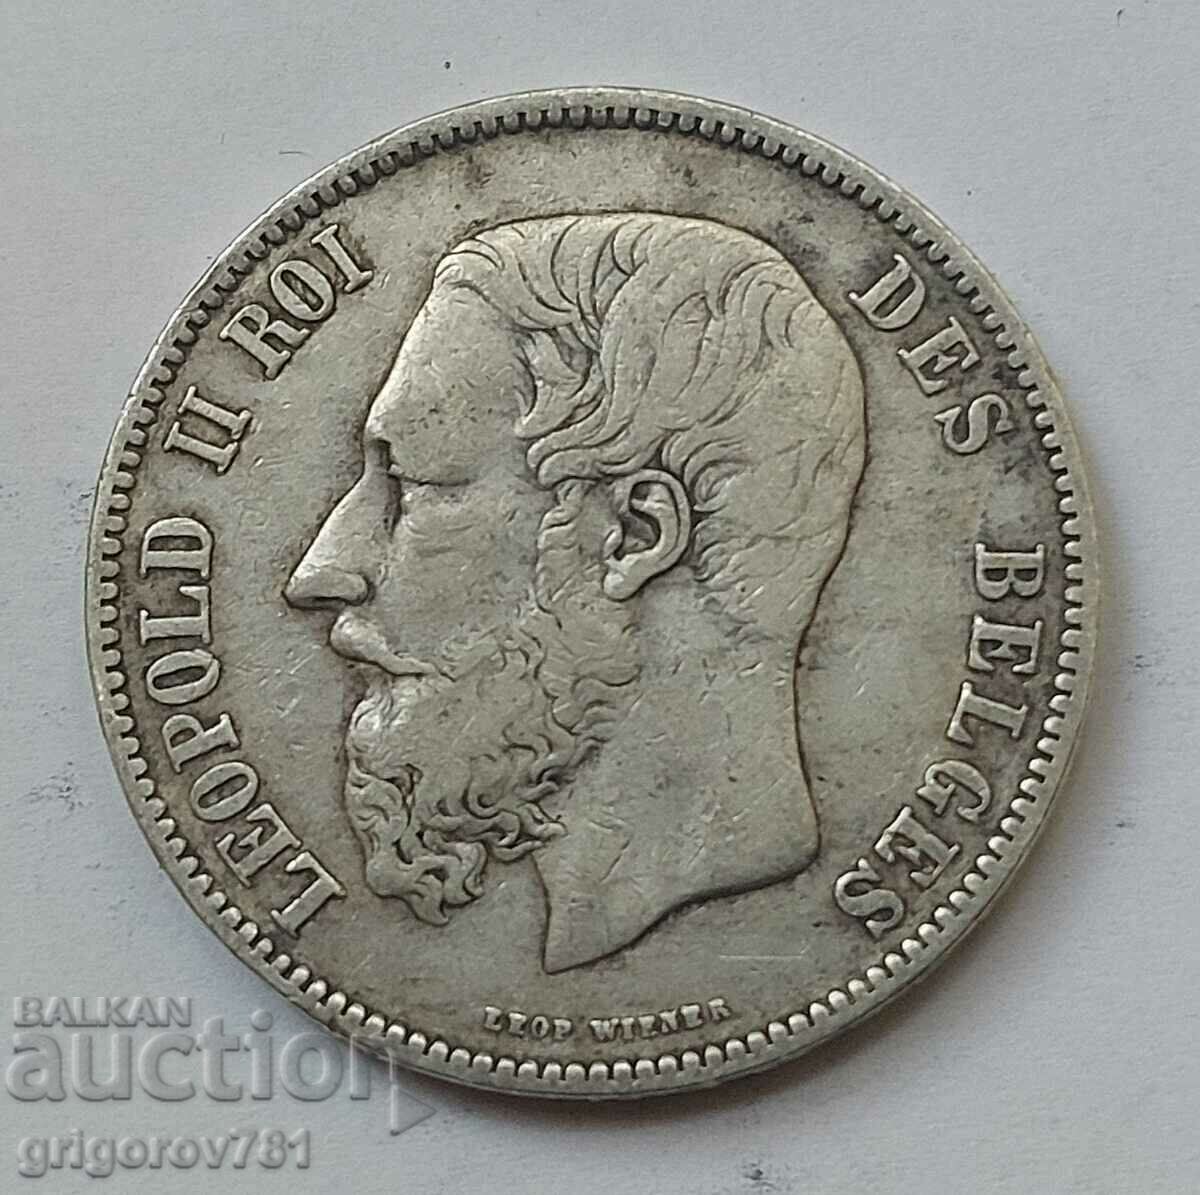 Ασημένιο 5 Φράγκα Βέλγιο 1873 Ασημένιο νόμισμα #177